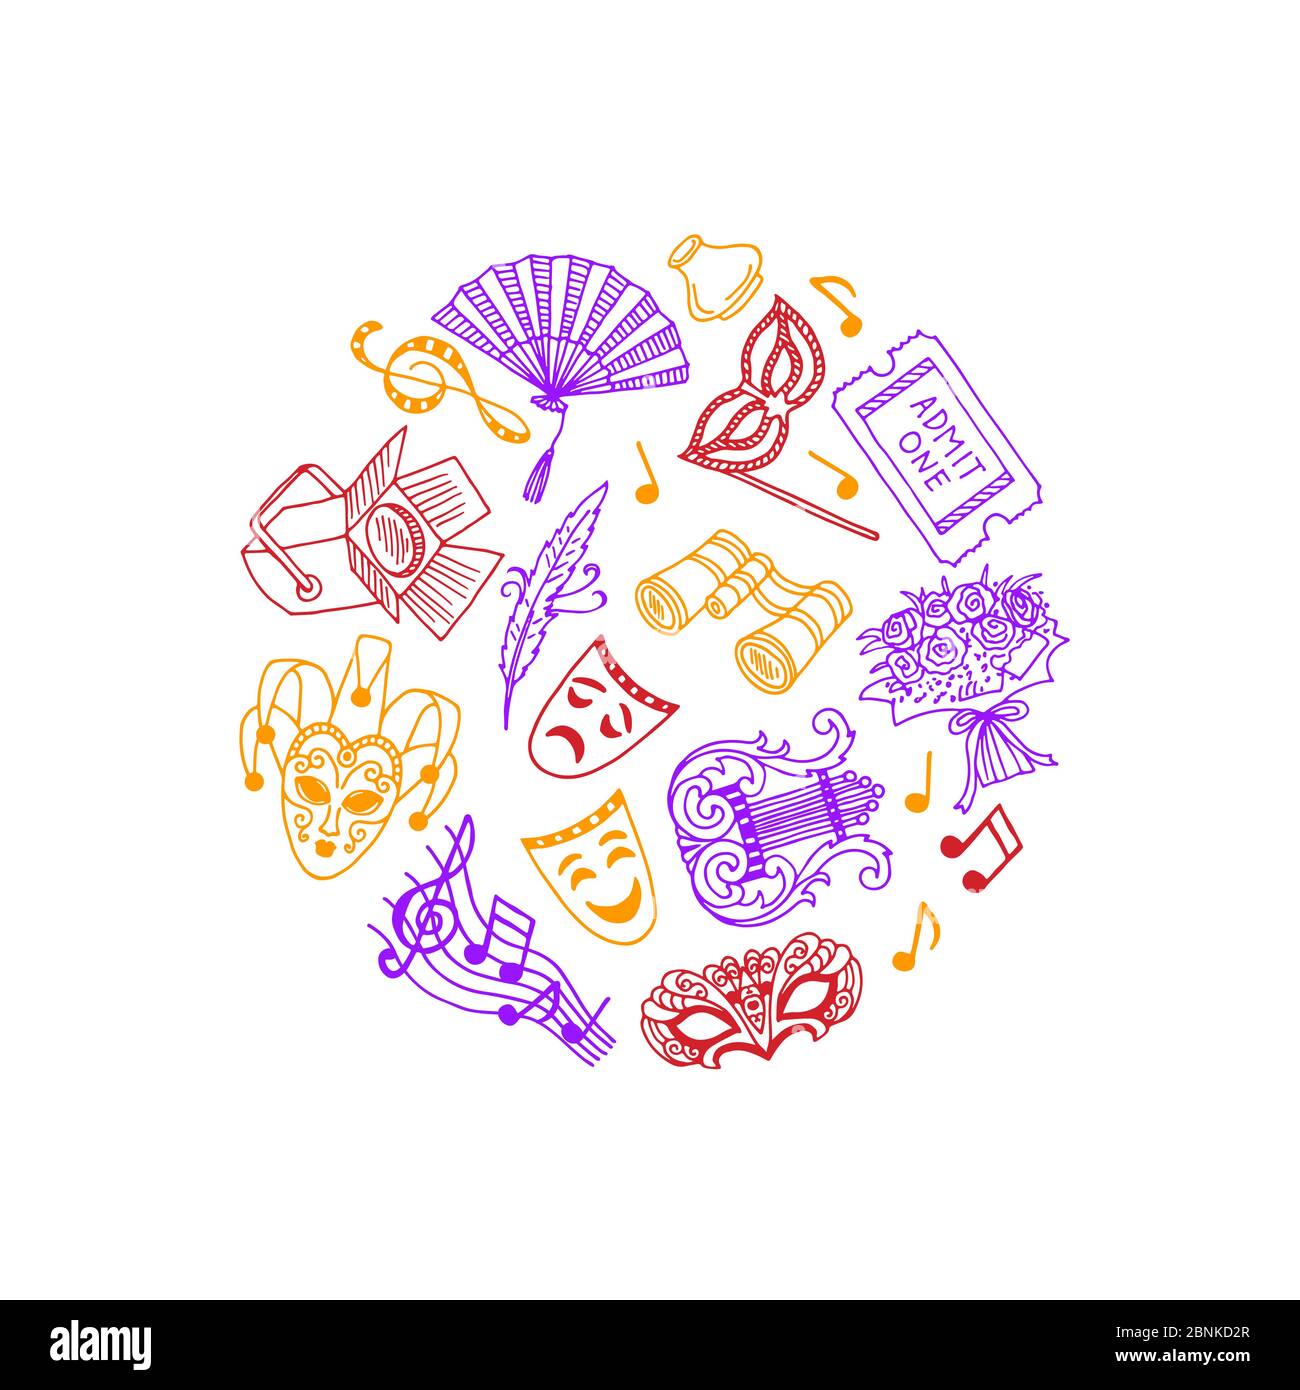 Elementi del teatro di doodle vettoriali nell'illustrazione circolare Illustrazione Vettoriale